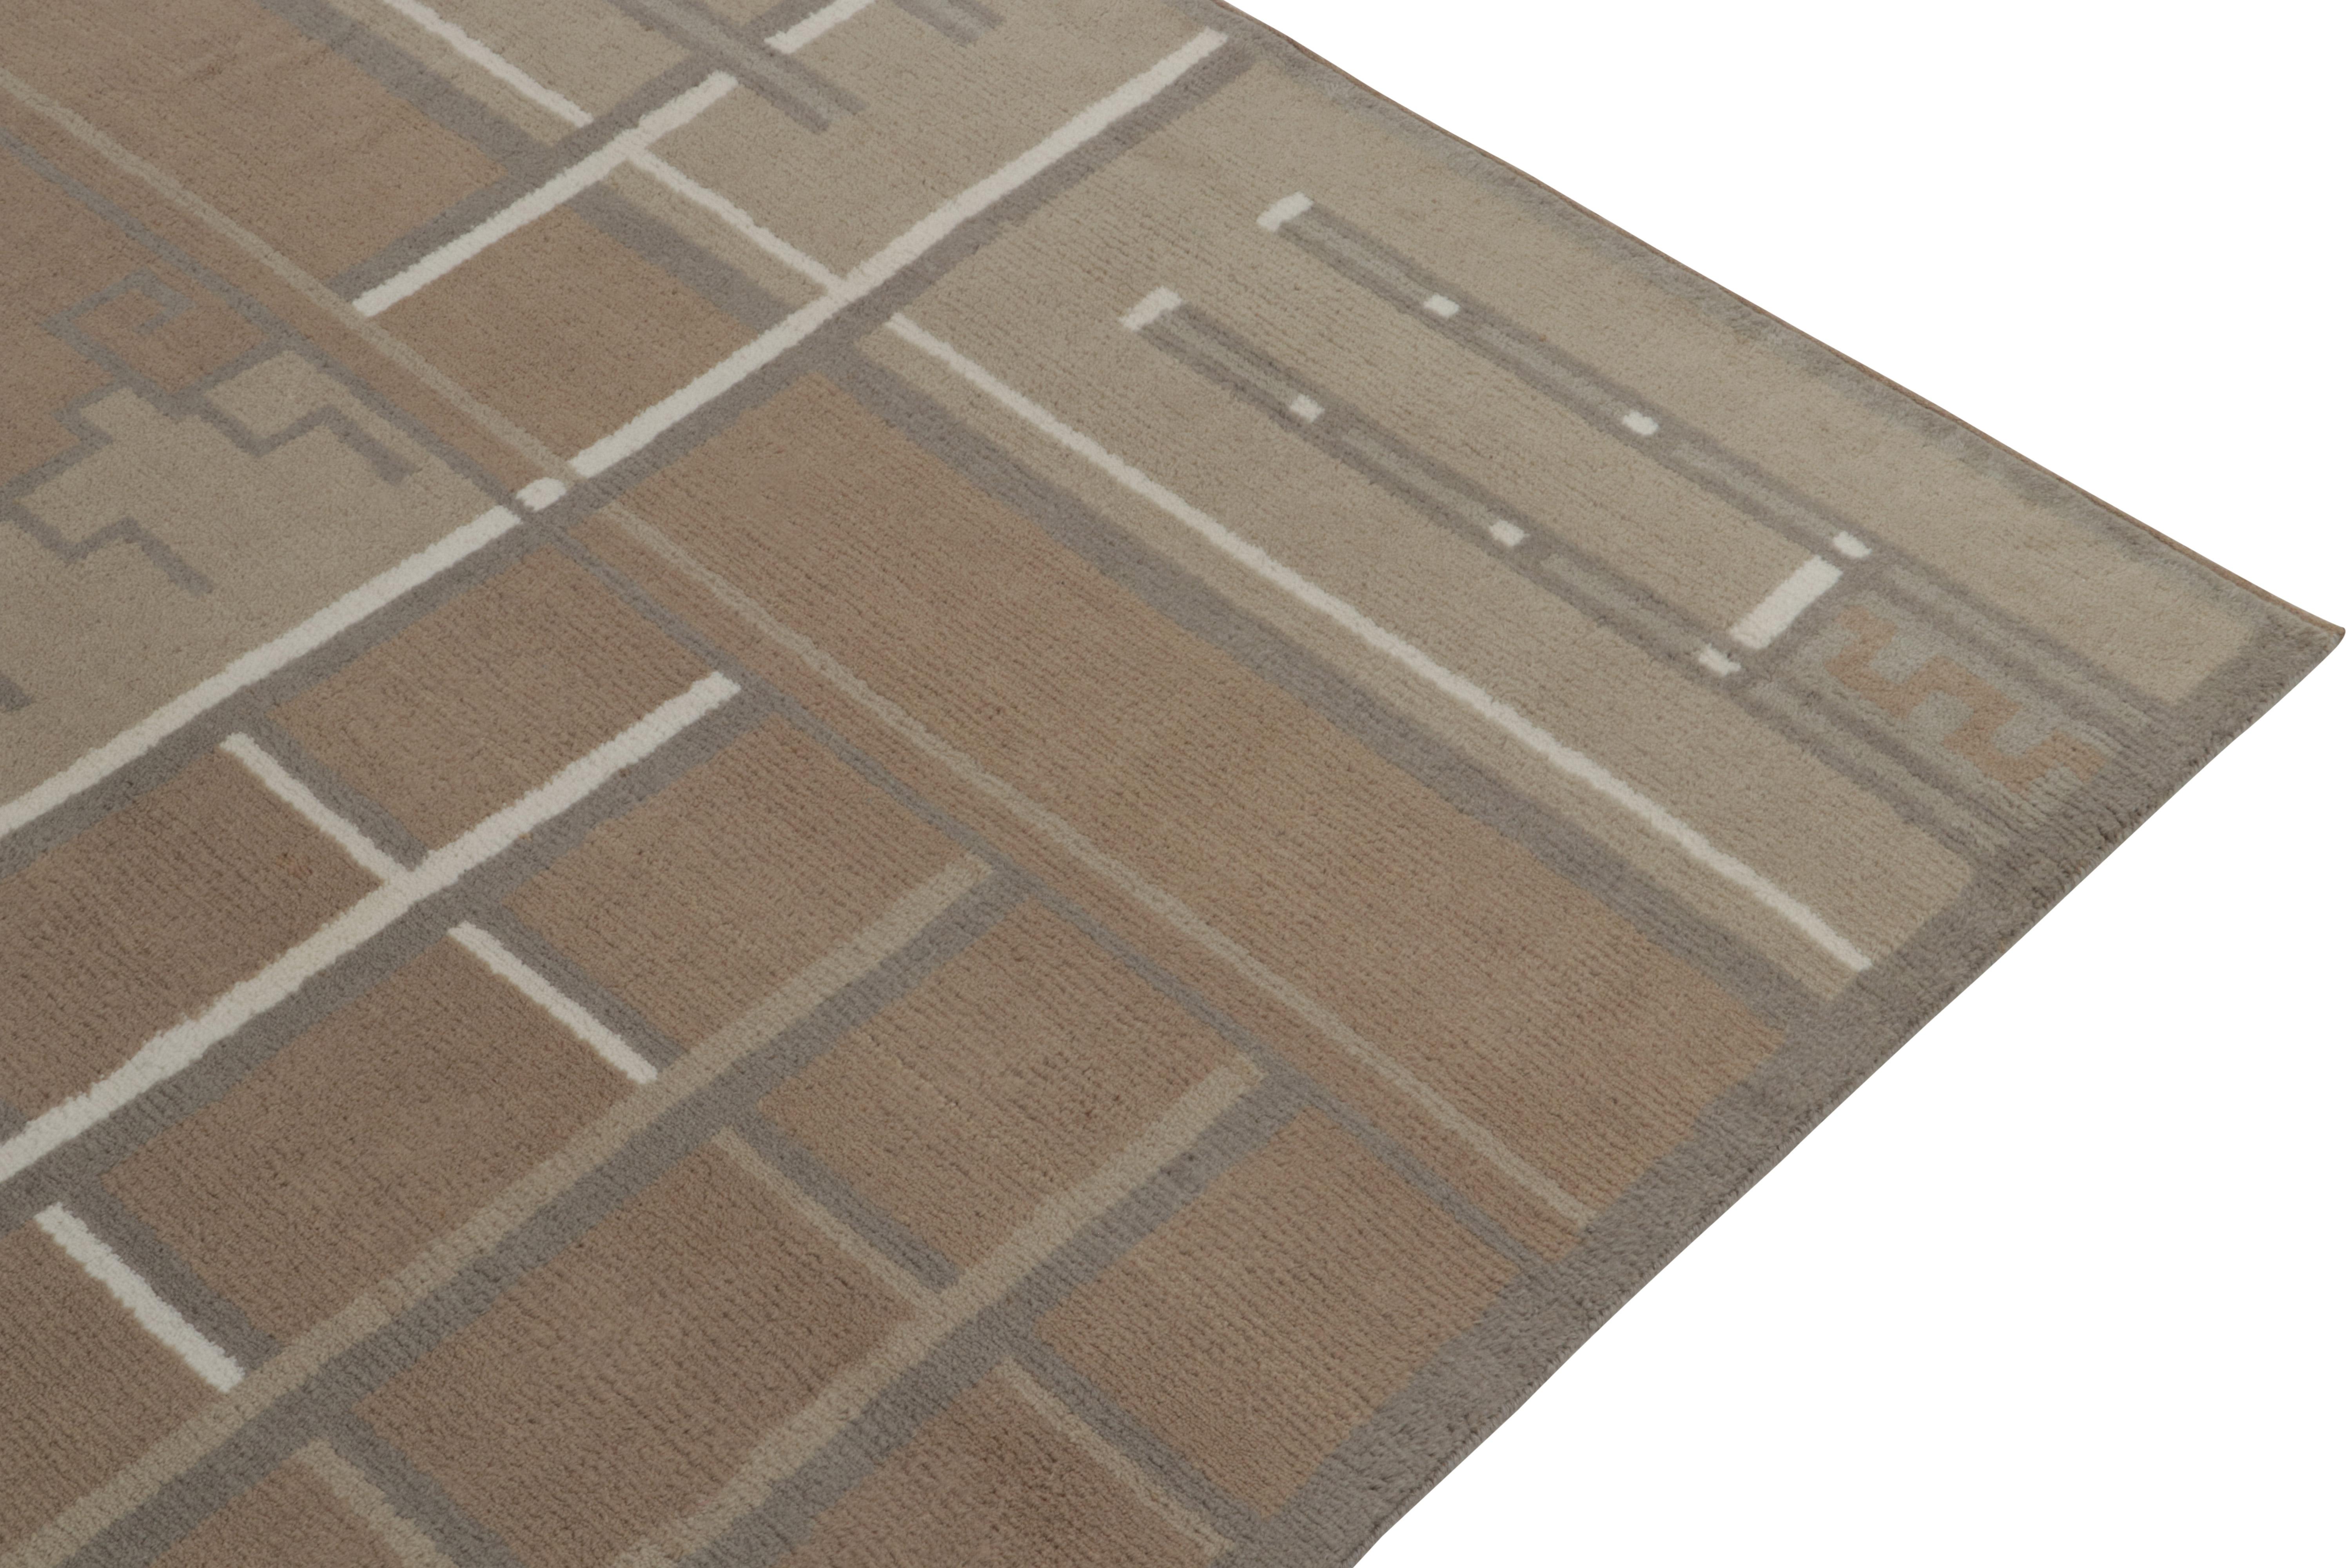 Rug & Kilim's Teppich im schwedischen Deko-Stil in Beige-Braun und Grauen Geometrischen Mustern (Handgeknüpft) im Angebot